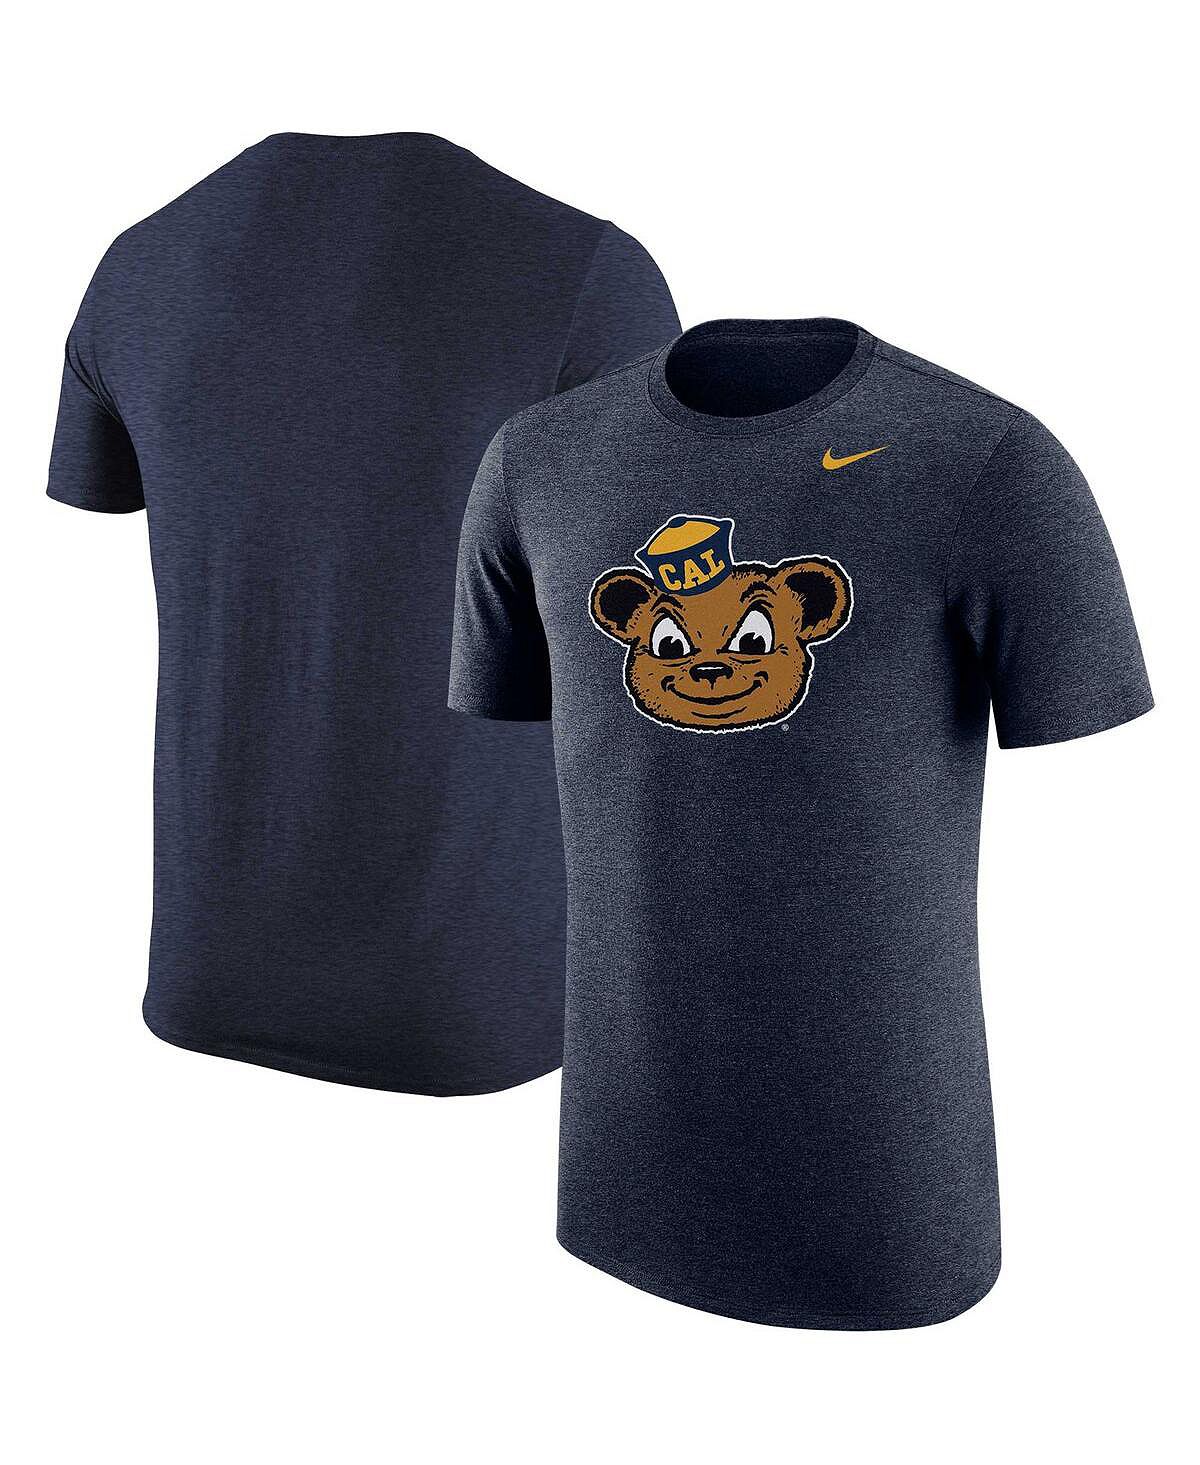 цена Мужская темно-синяя футболка Tri-Blend с логотипом Cal Bears Nike